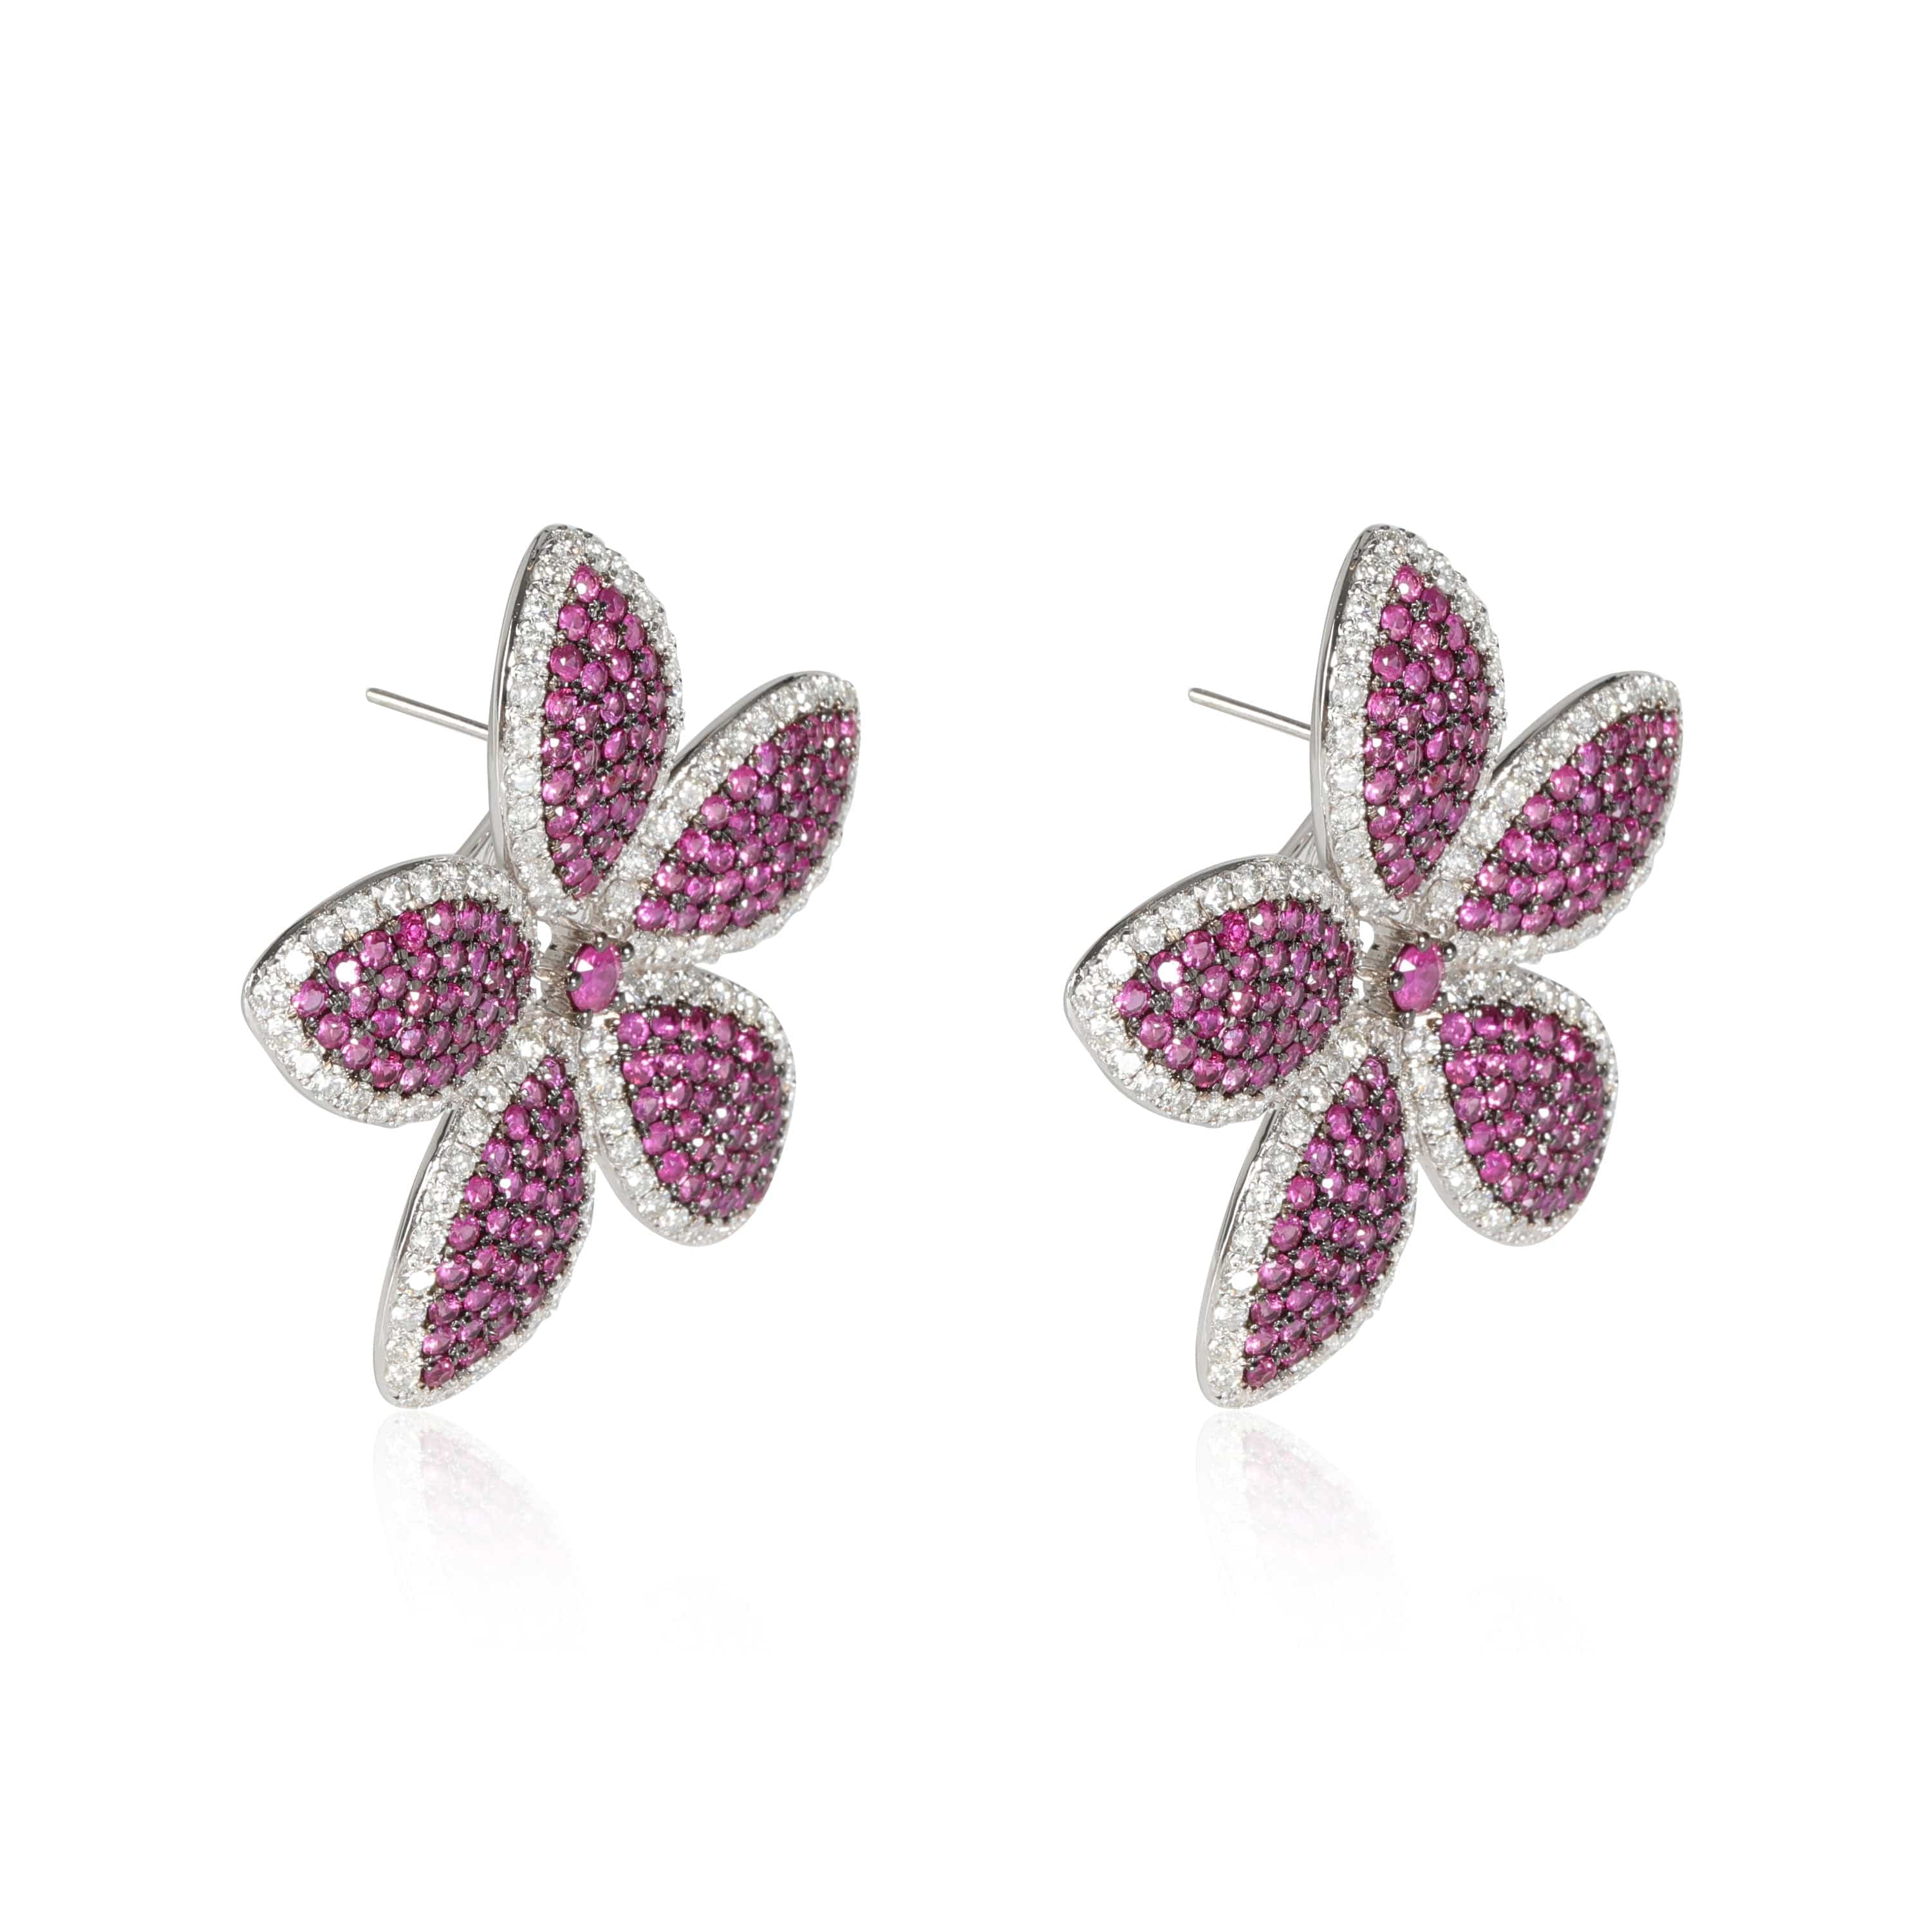 Ruby Diamond Five Petal Flower Earrings in 18K White Gold 5.75 Ctw